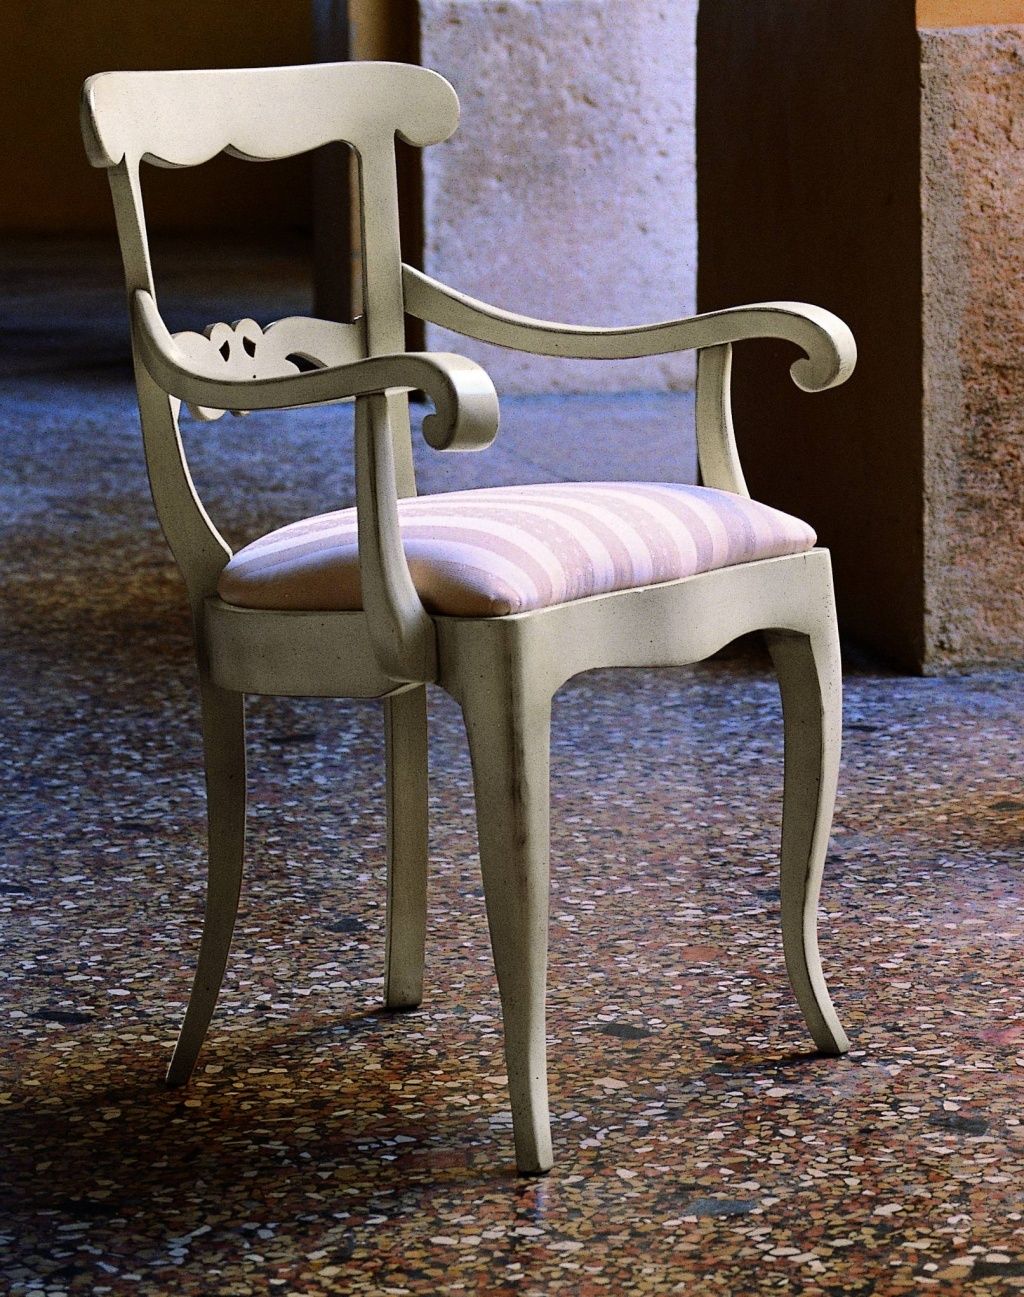 Stylová židle polstrovaná s opěrkami růžové pruhy 56x55x90 styl vintage Mdum - M DUM.cz